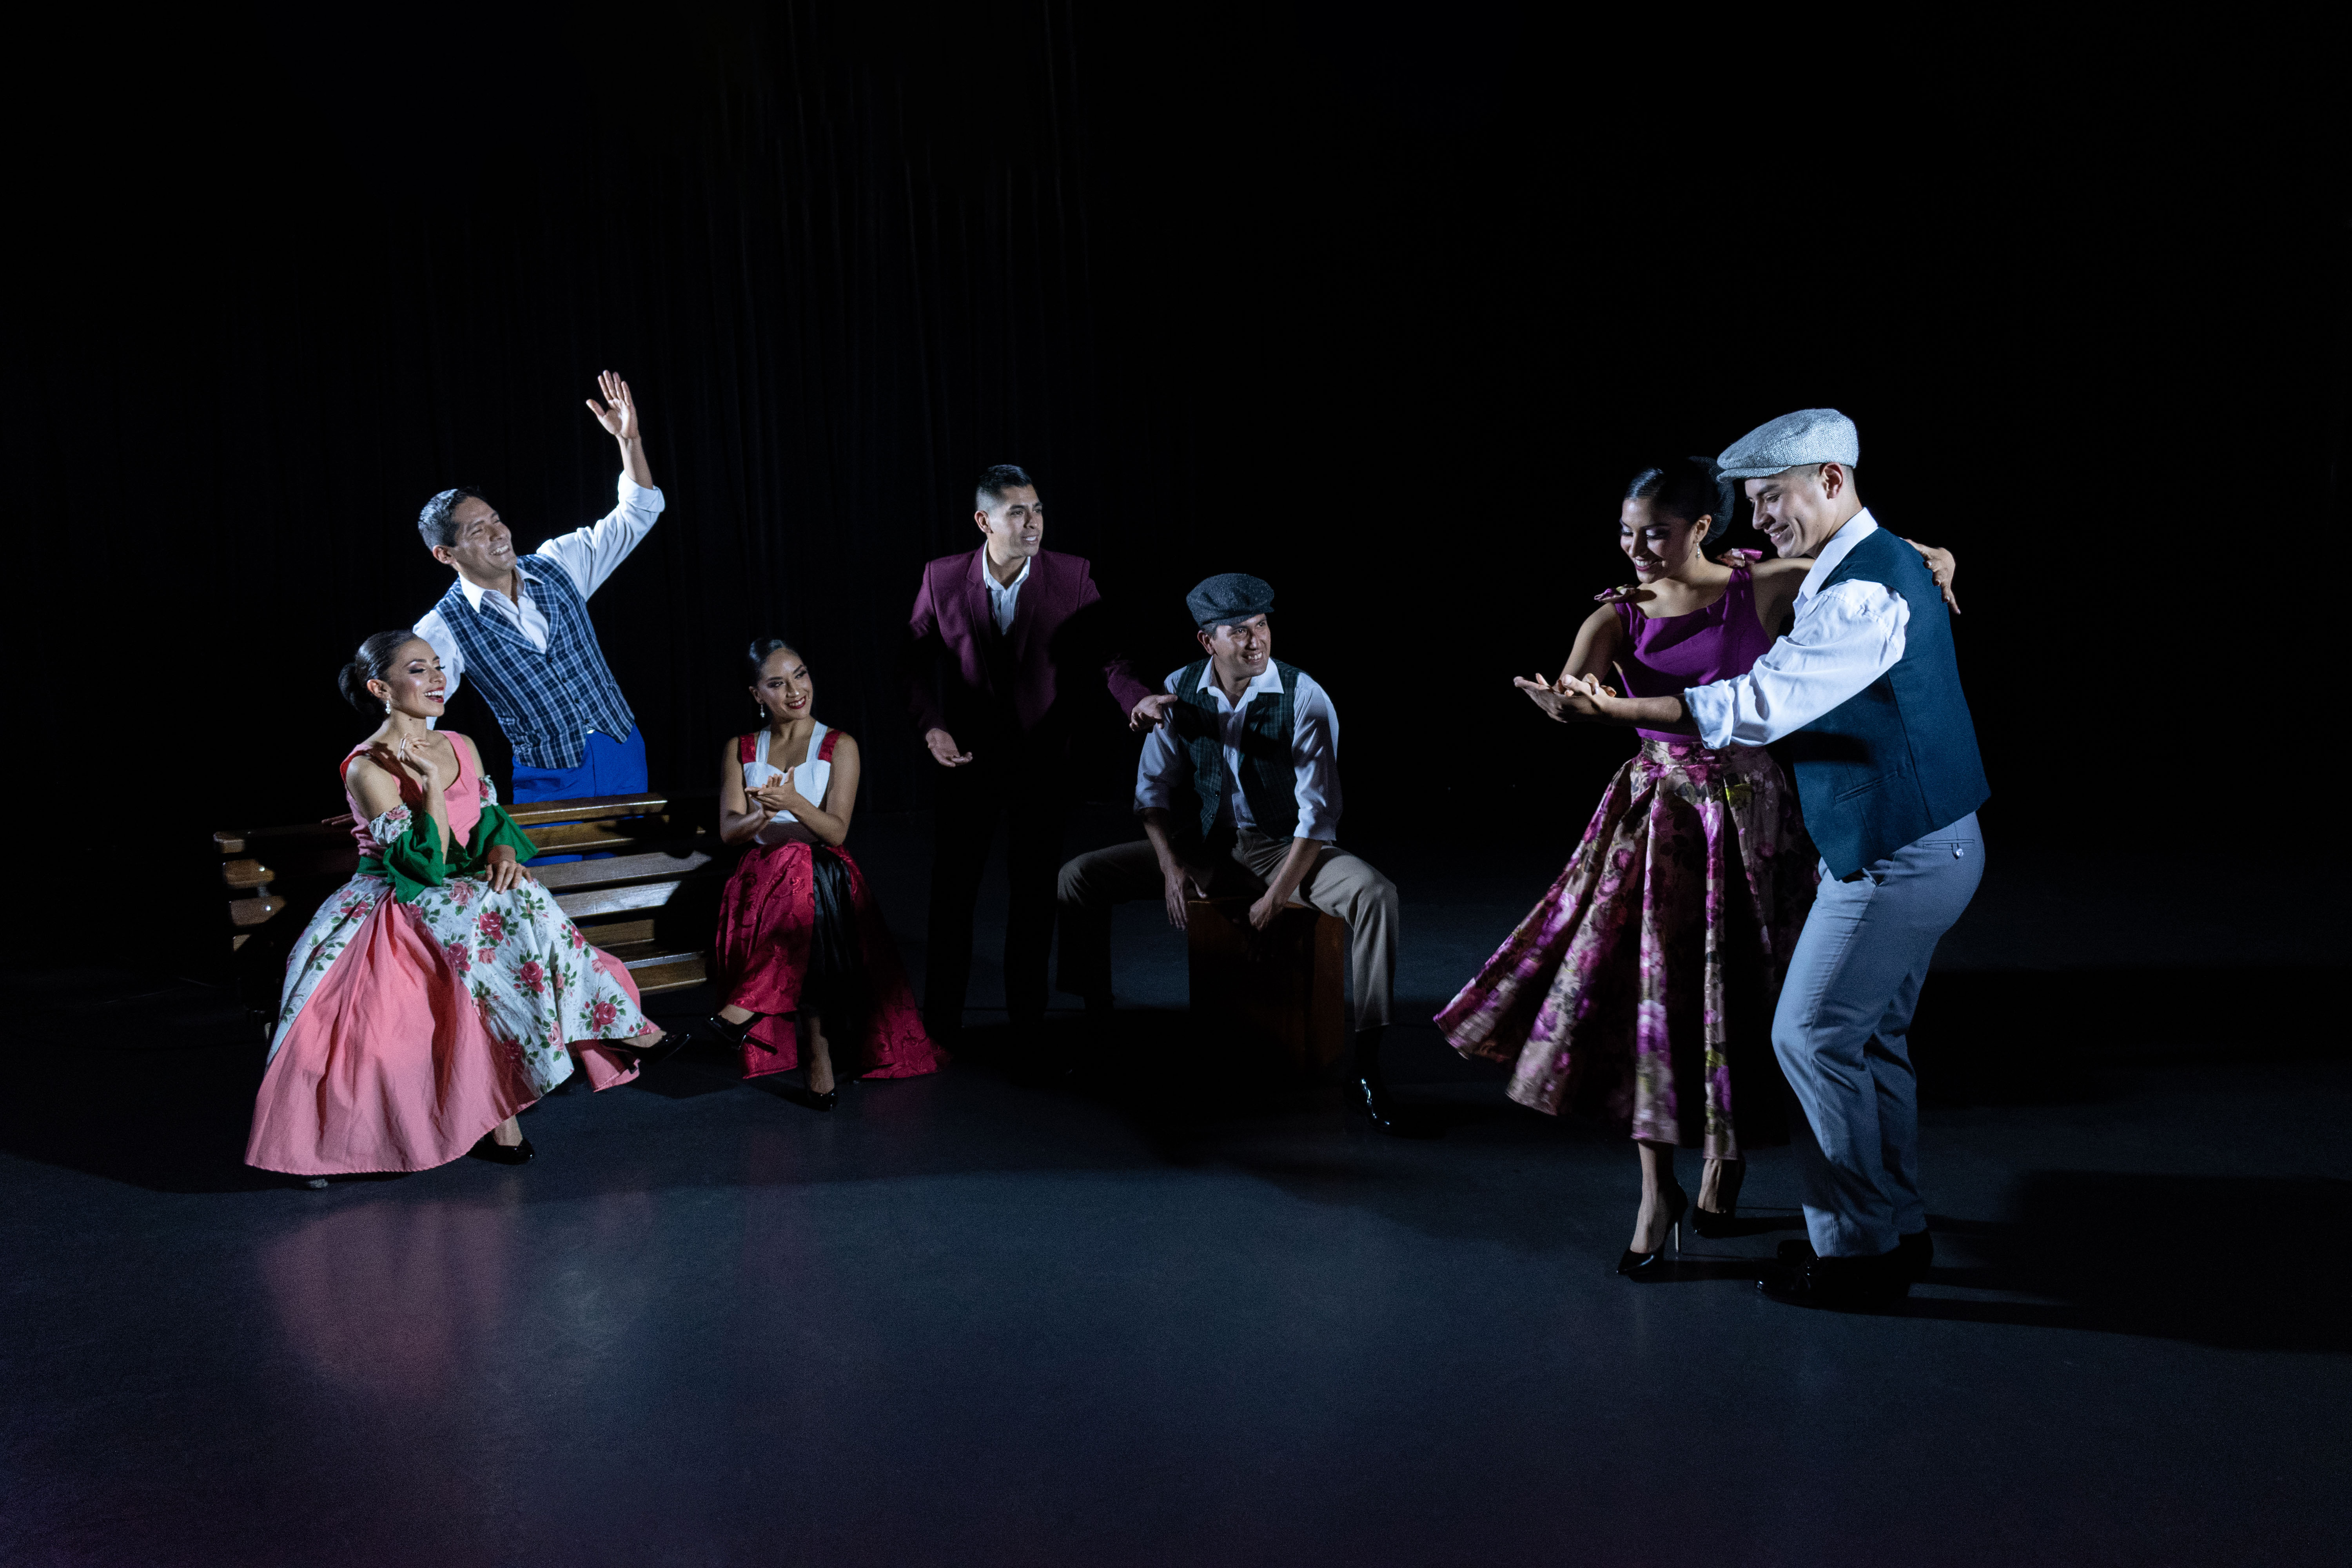 Ballet Folclórico Nacional del Perú estrena nuevo espectáculo en el Gran Teatro Nacional: “Chabuca: Aromas de Mixtura”